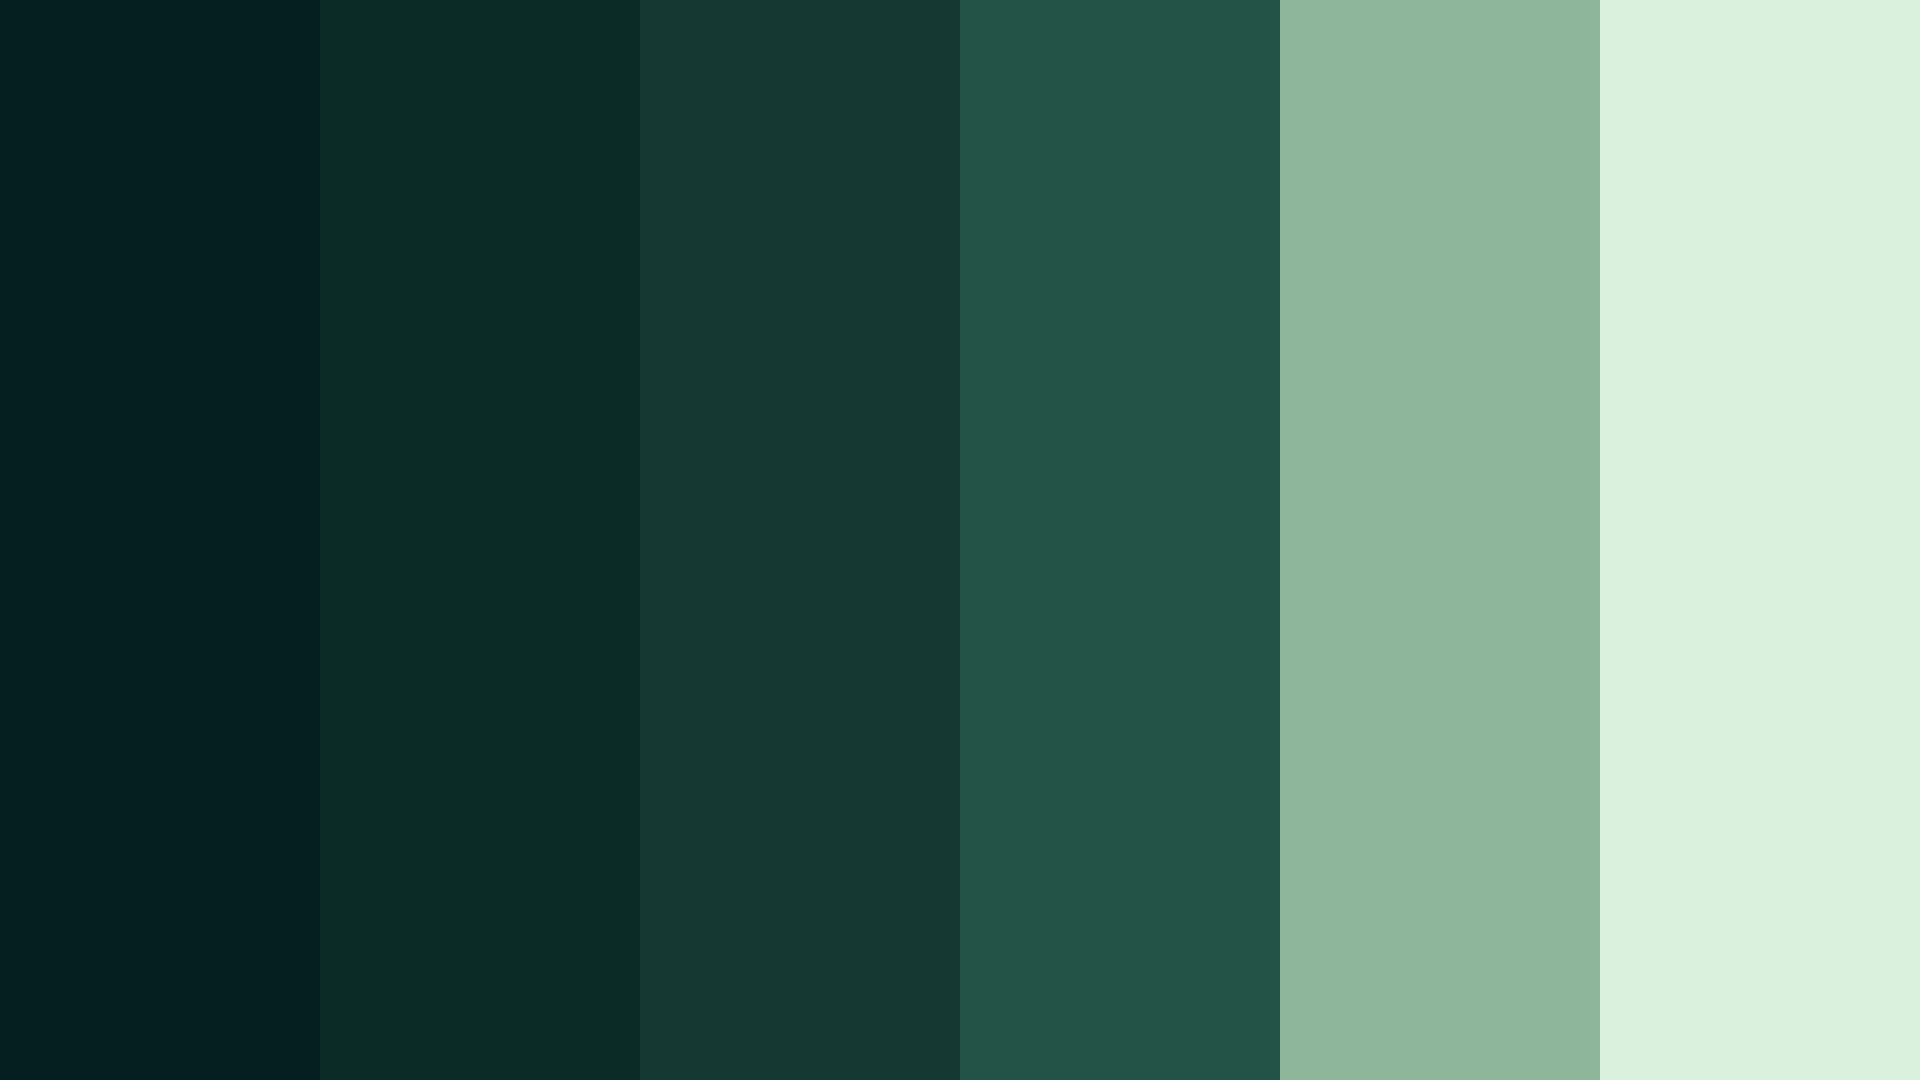 Код темно зеленого цвета. Форест Грин цвет. Холодный зеленый цвет. Оттенки холодного зеленого. Холодный темно зеленый цвет.